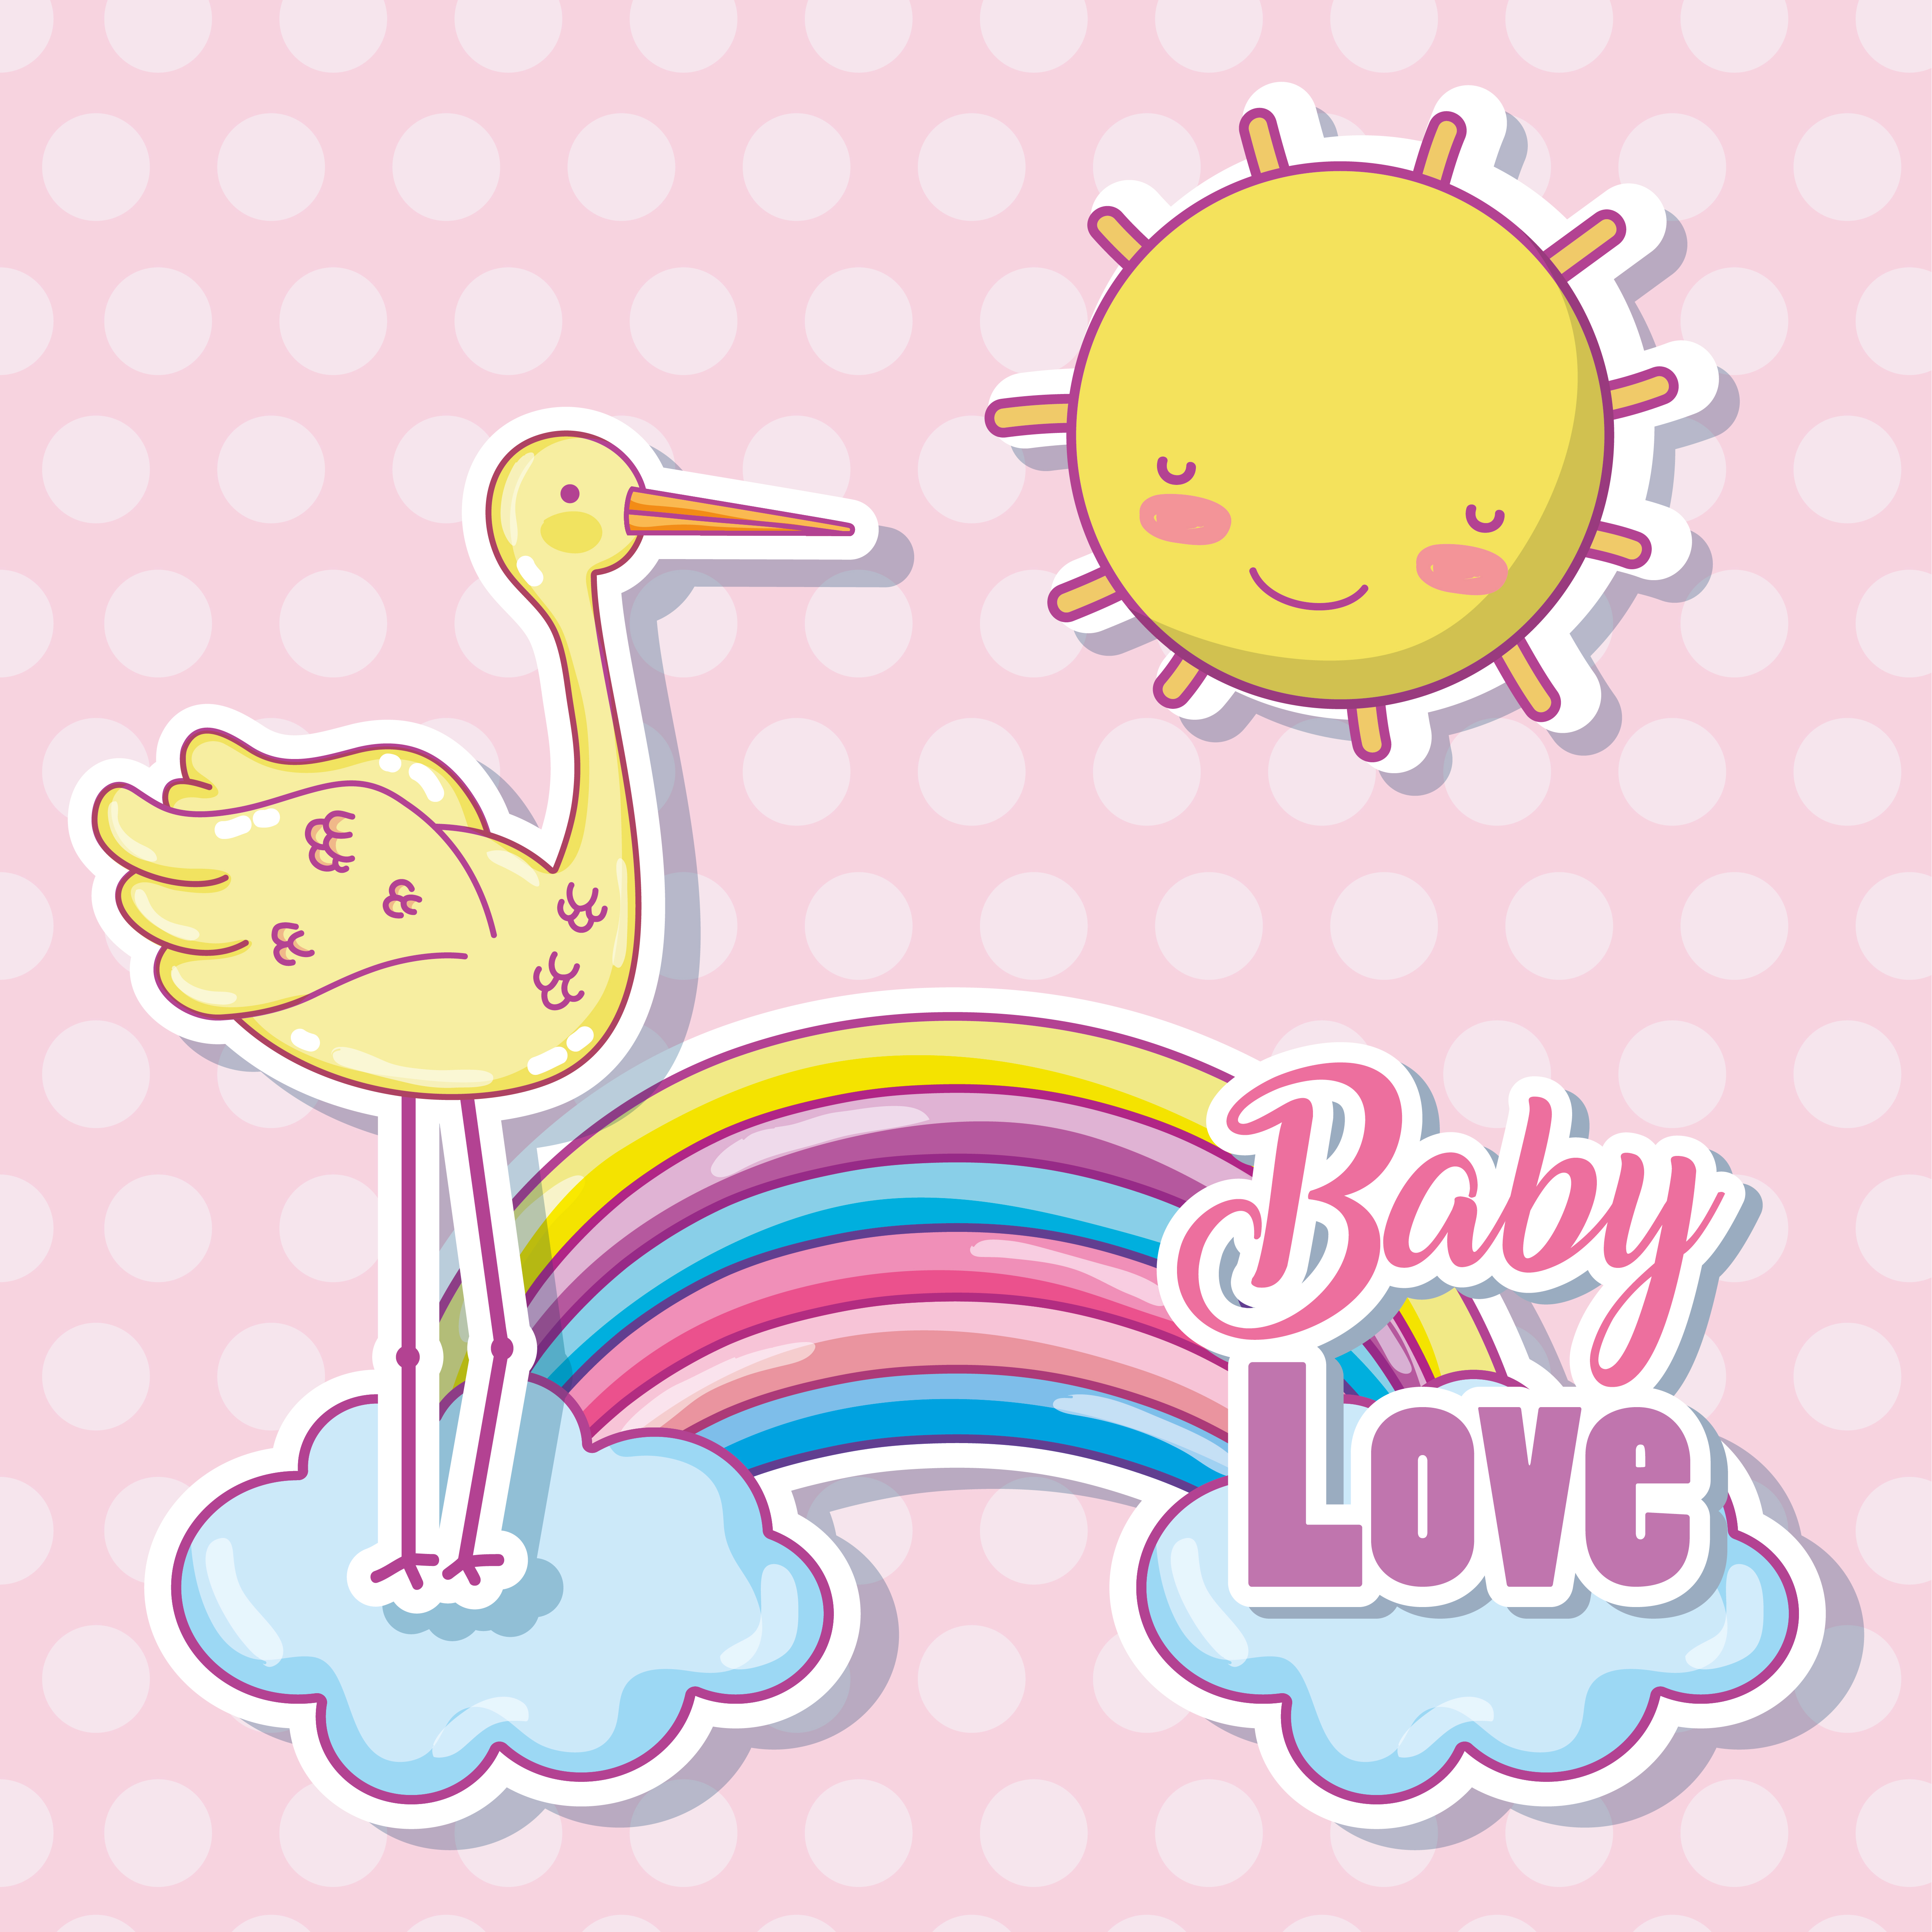 Baby love cartoon 624687 Vector Art at Vecteezy